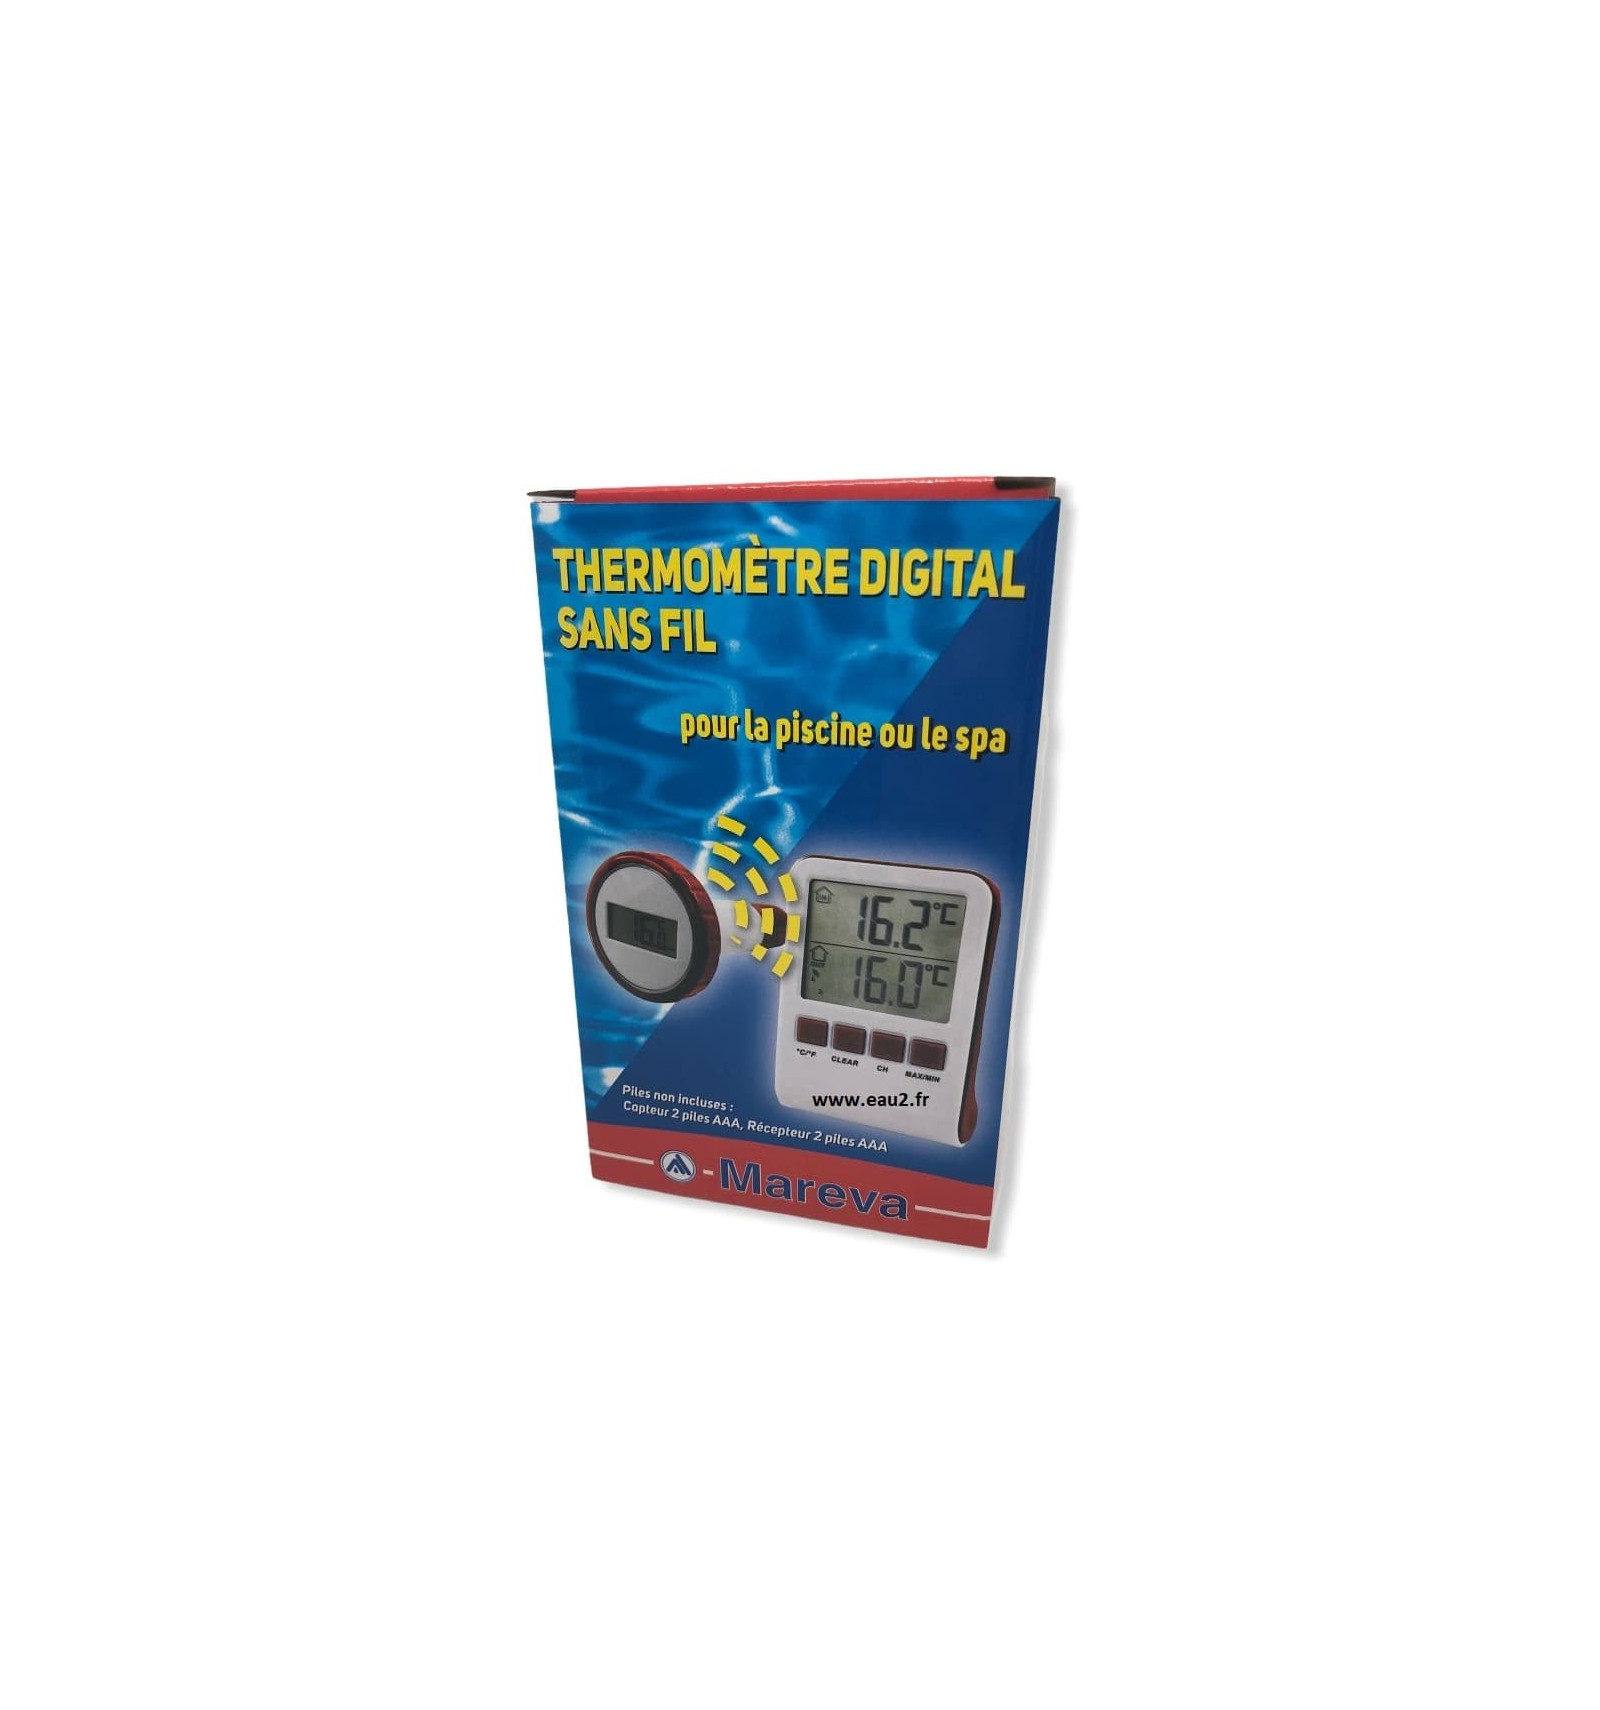 Thermomètre digital sans fil avec borne fonctionne avec piles pour